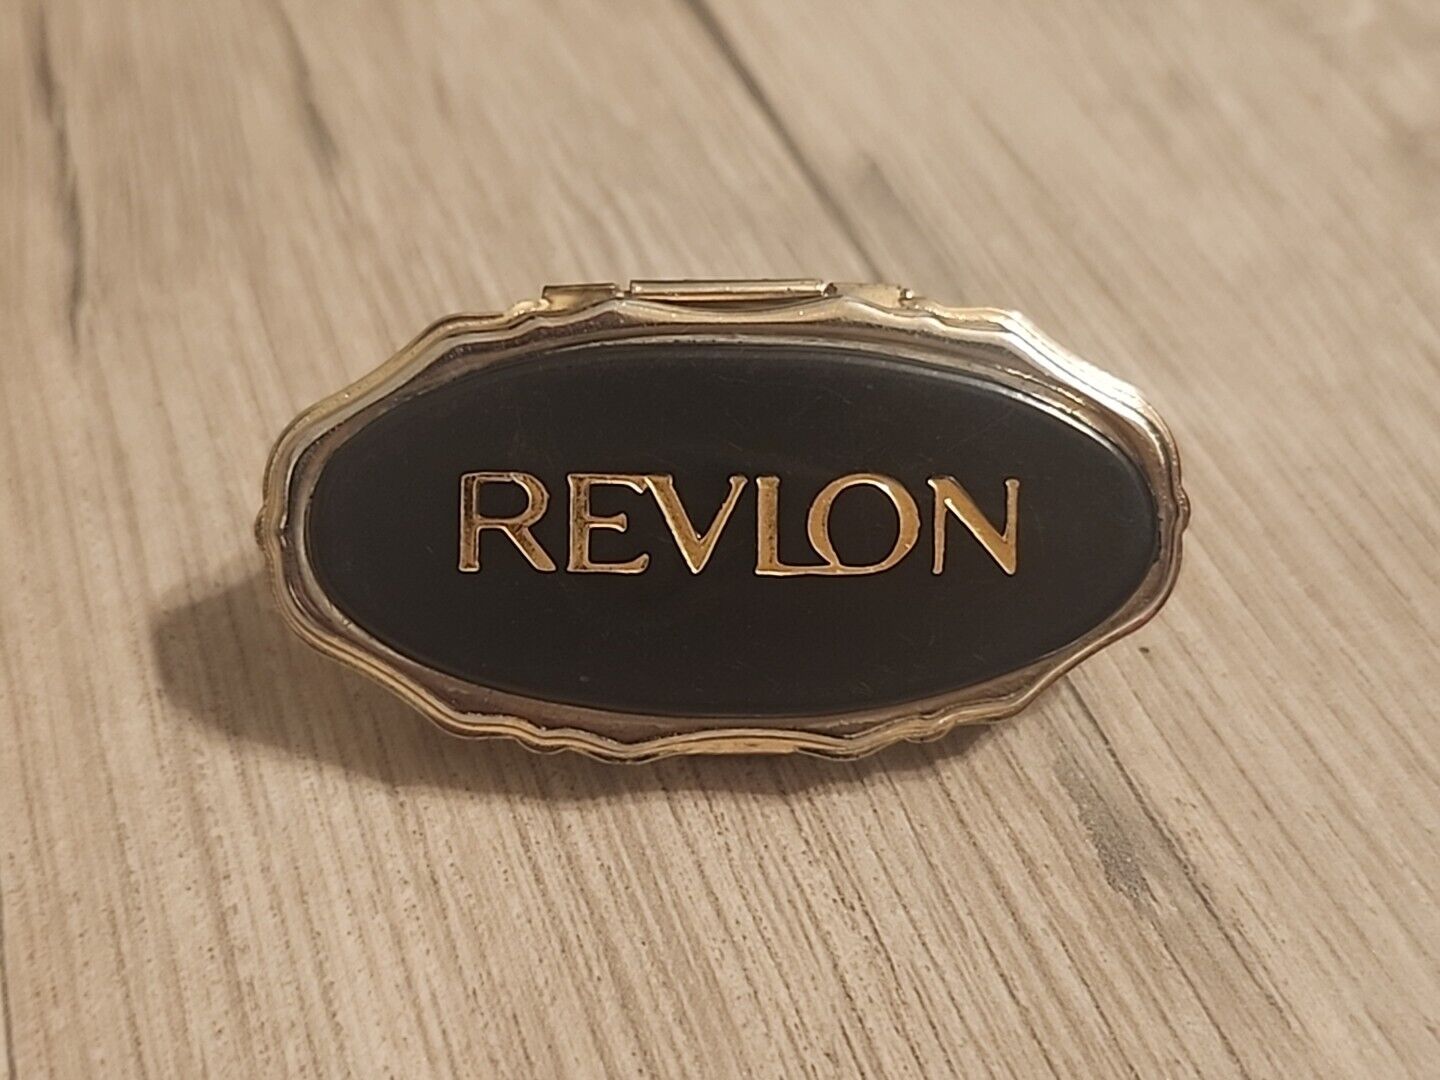 Vintage Revlon Lipstick holder with mirror